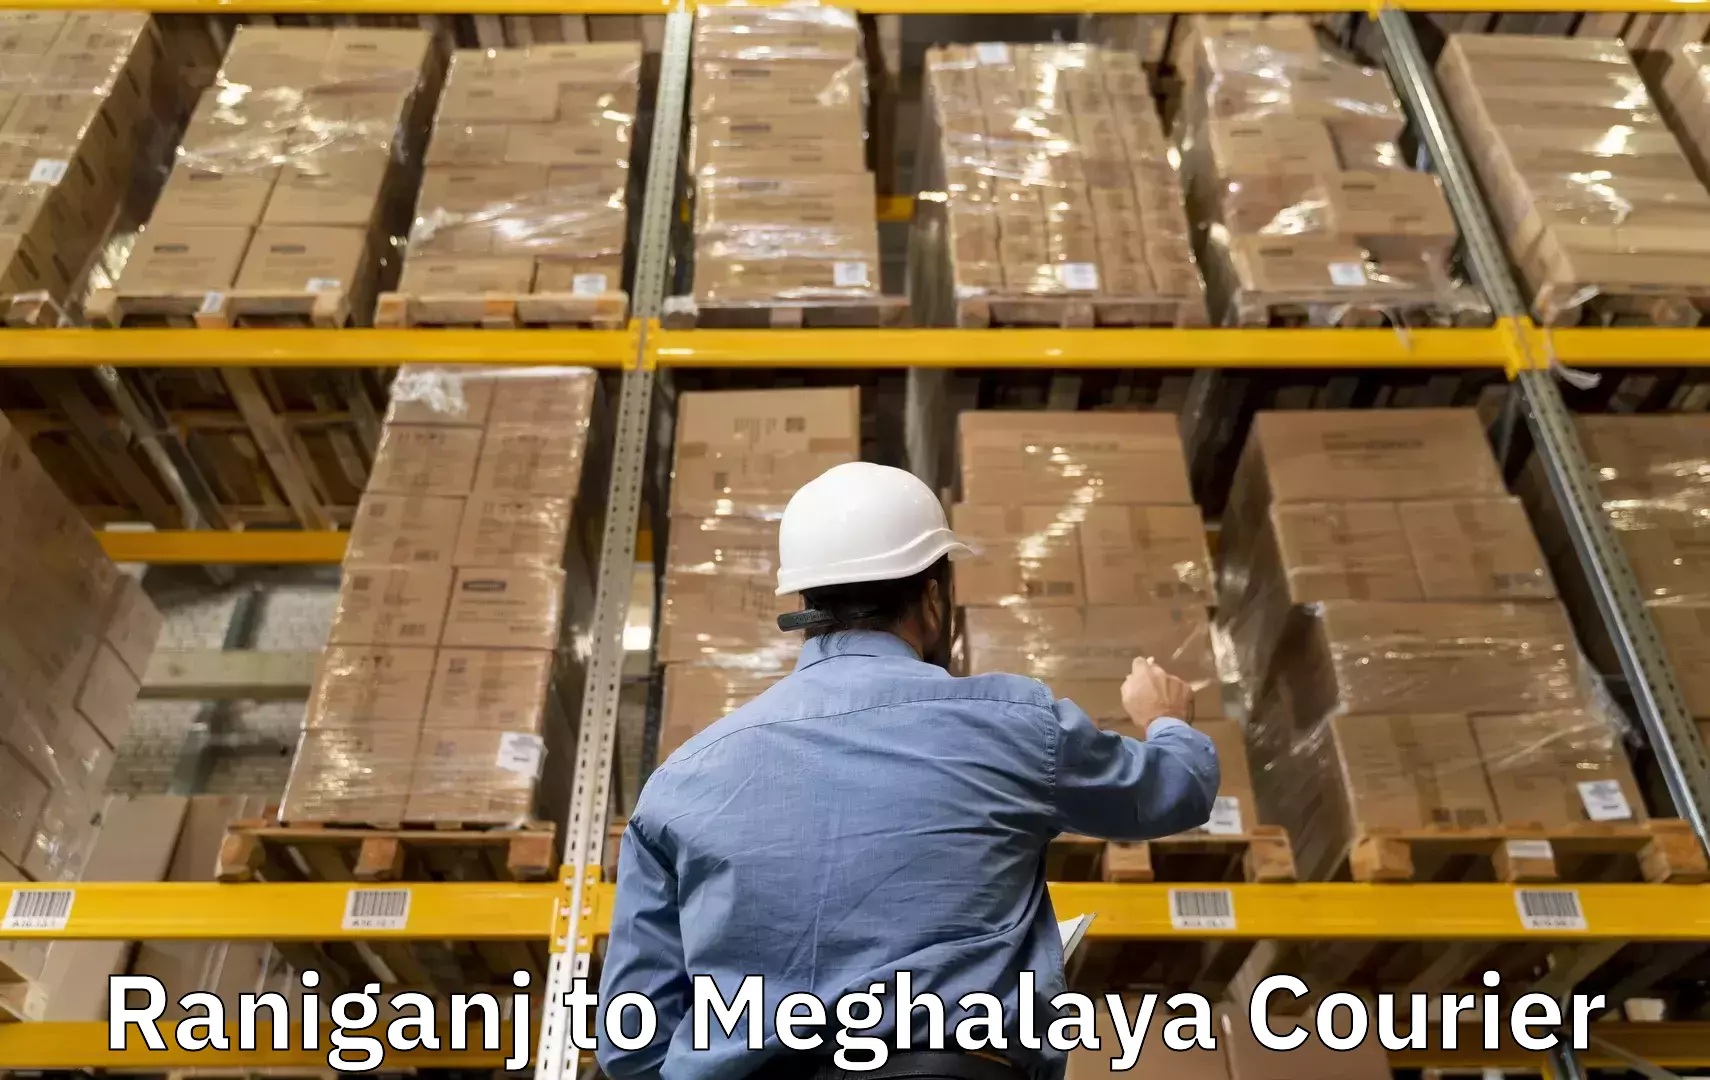 Baggage shipping service Raniganj to NIT Meghalaya